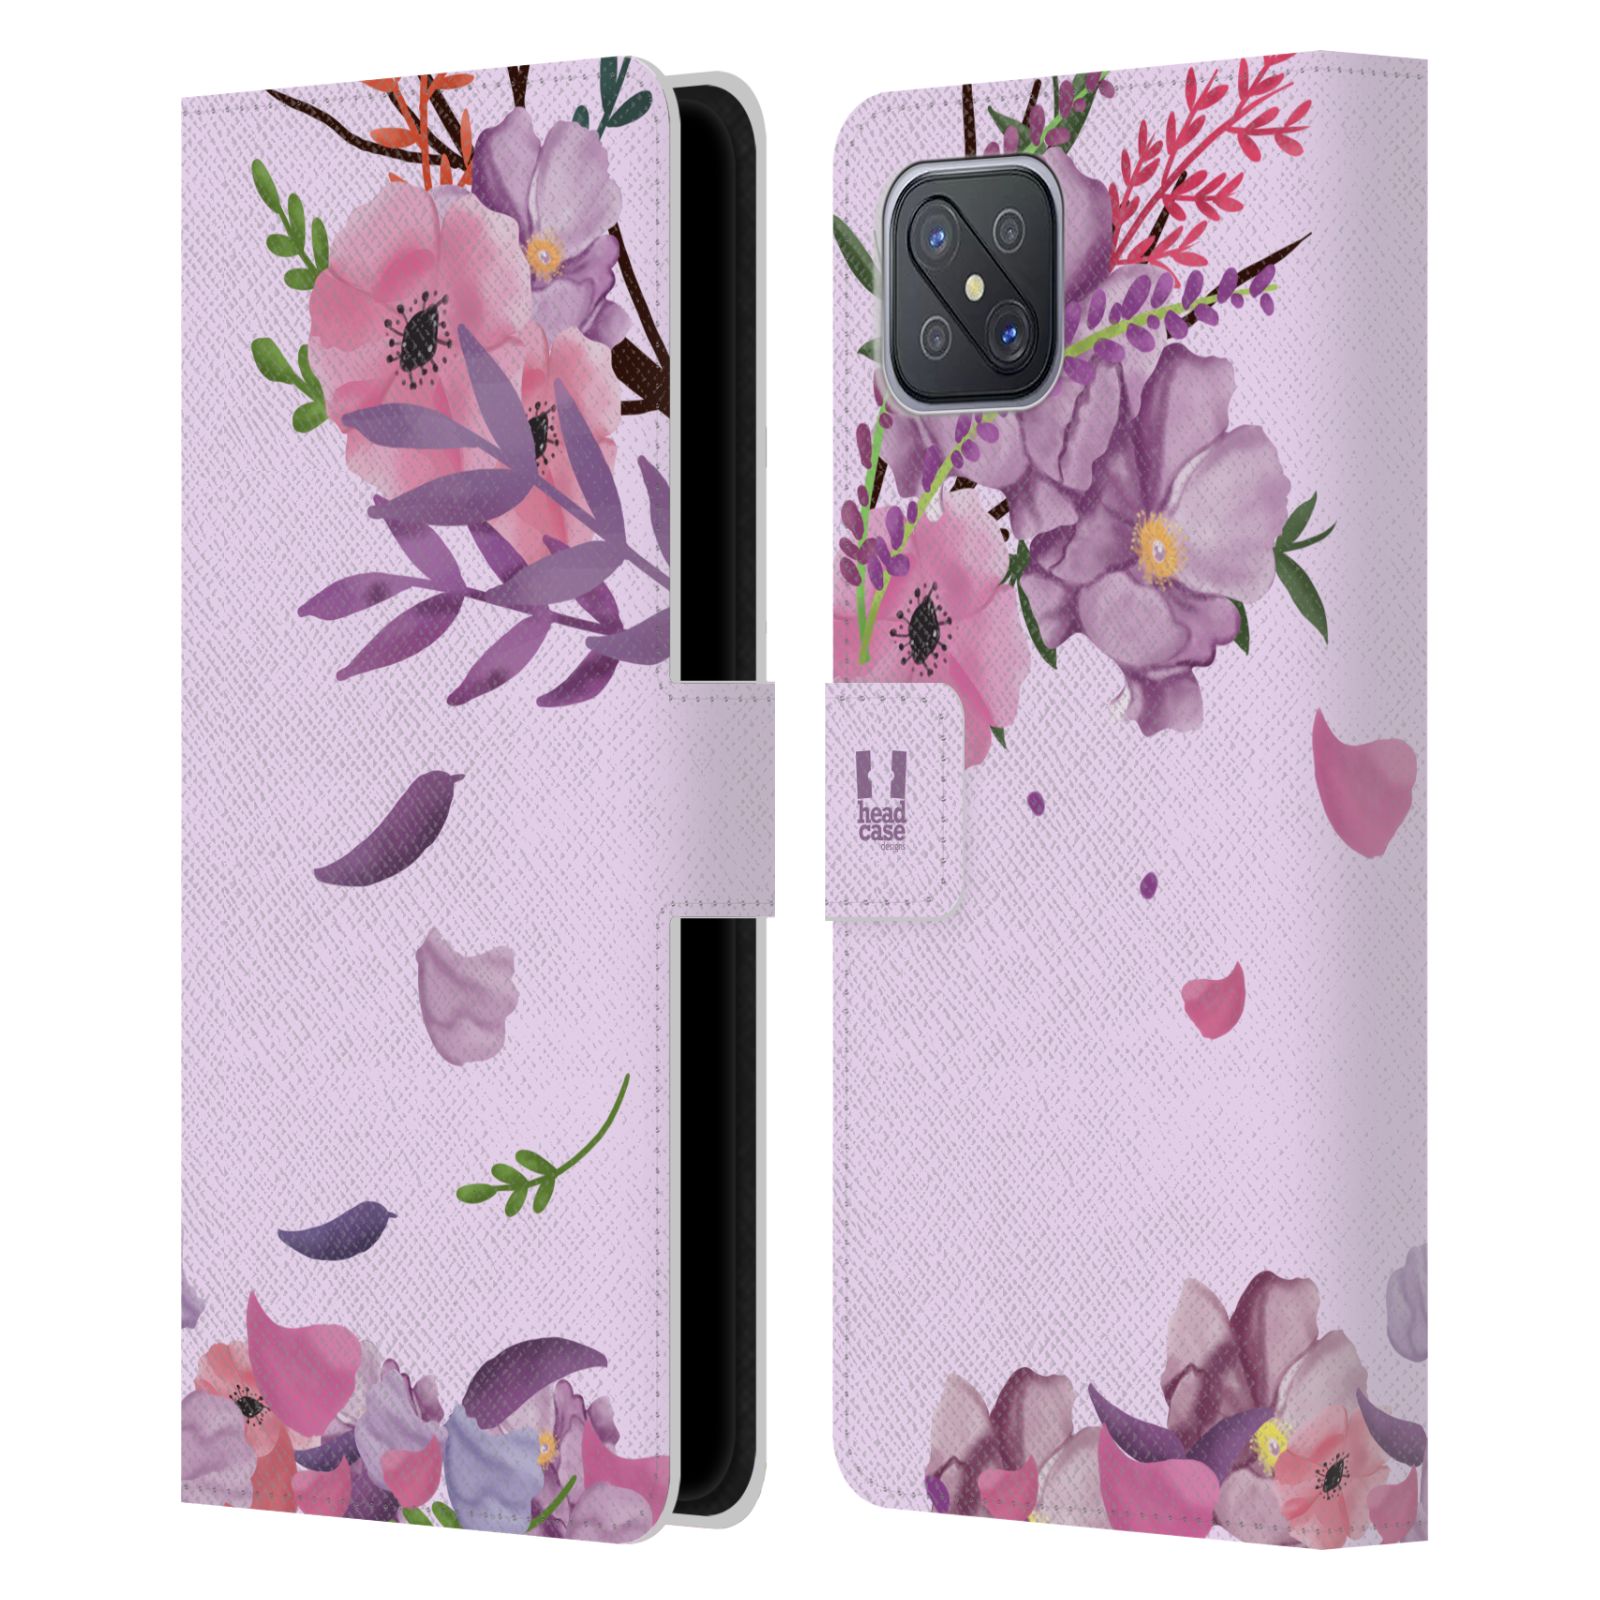 Pouzdro na mobil Oppo A92s - HEAD CASE - Rozkvetlé růže a listy růžová